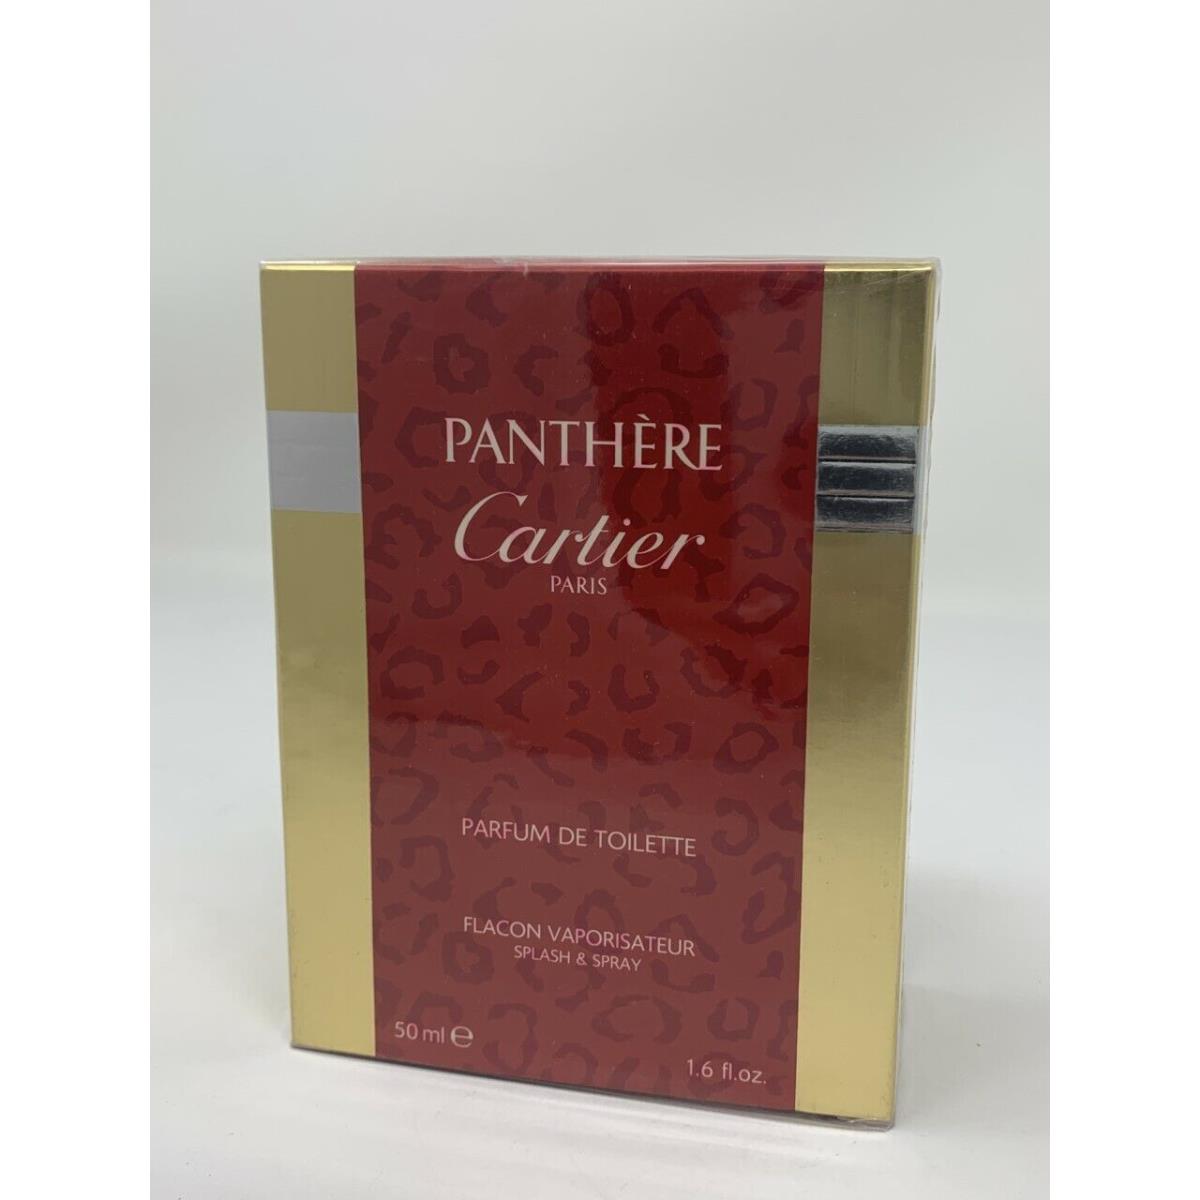 Panth re de Cartier 1.6 oz / 50 ml Parfum de Toilette